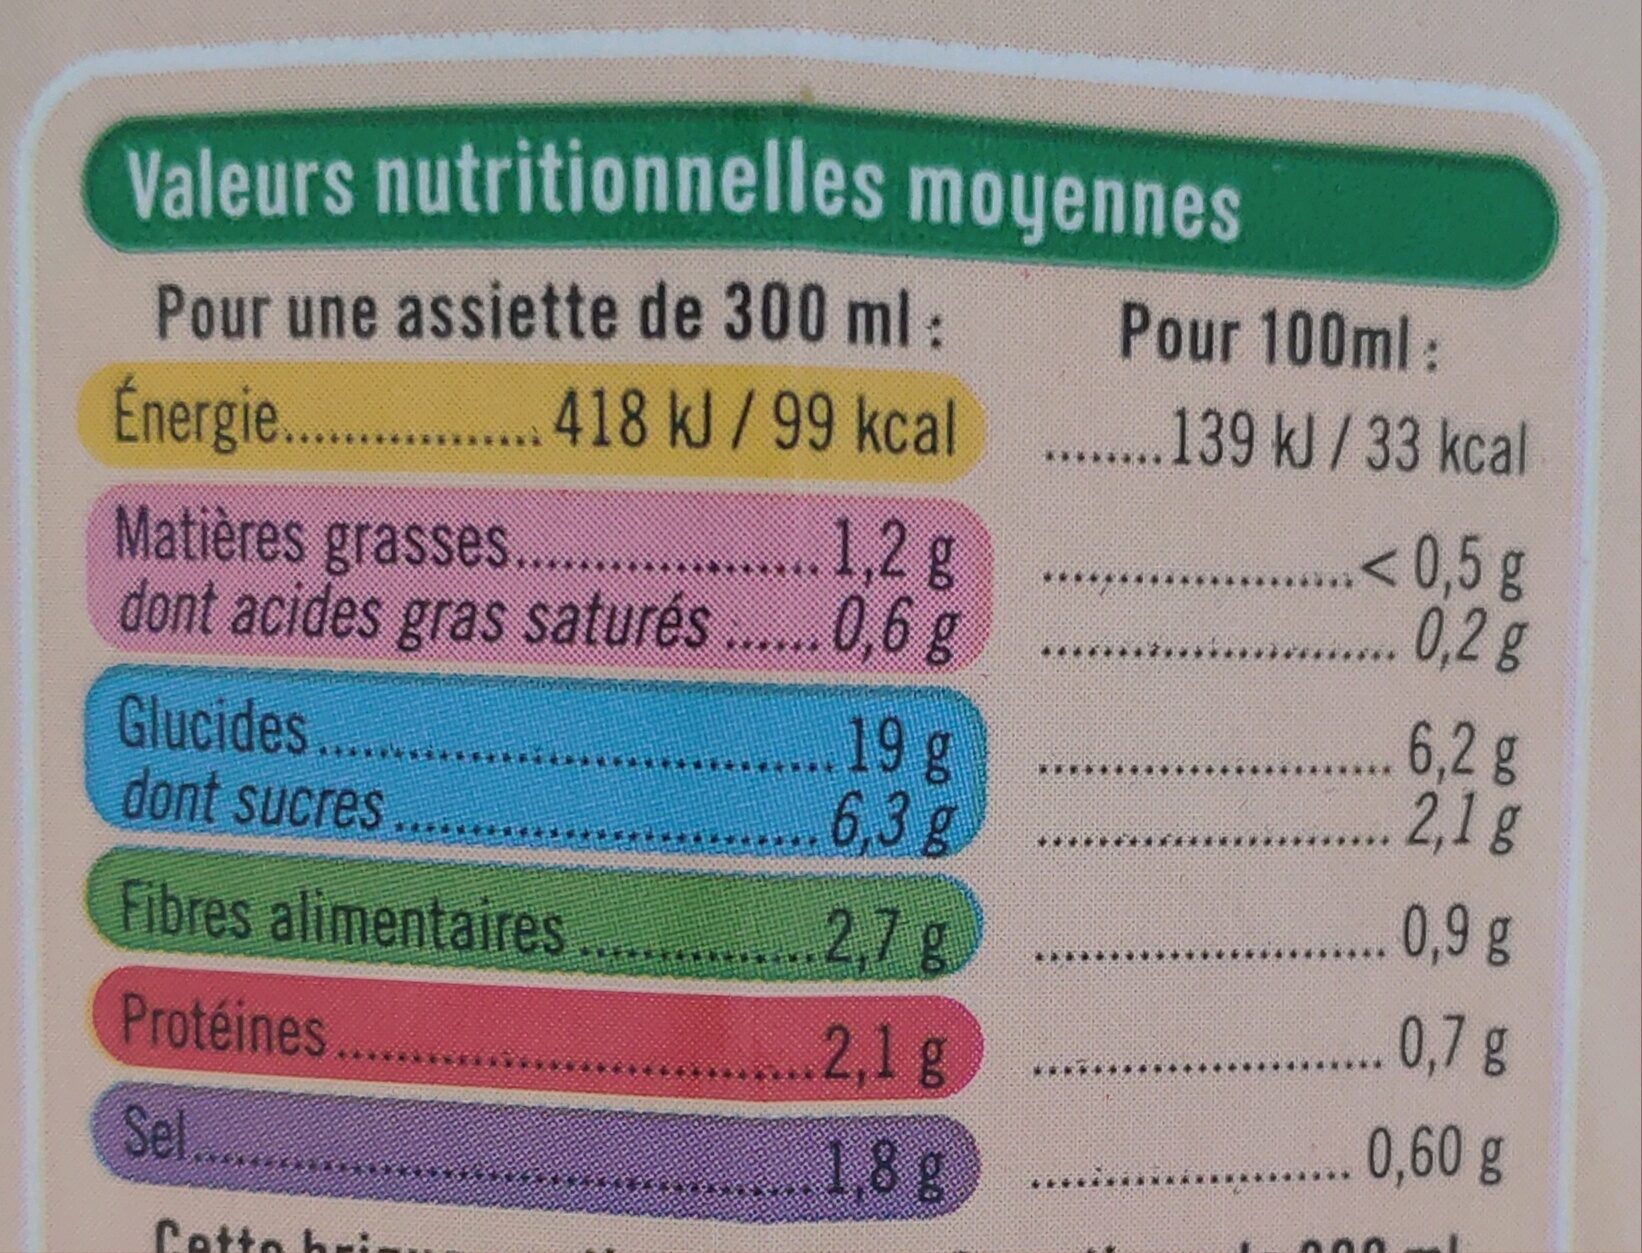 Velouté 7 légumes bio - Nutrition facts - fr